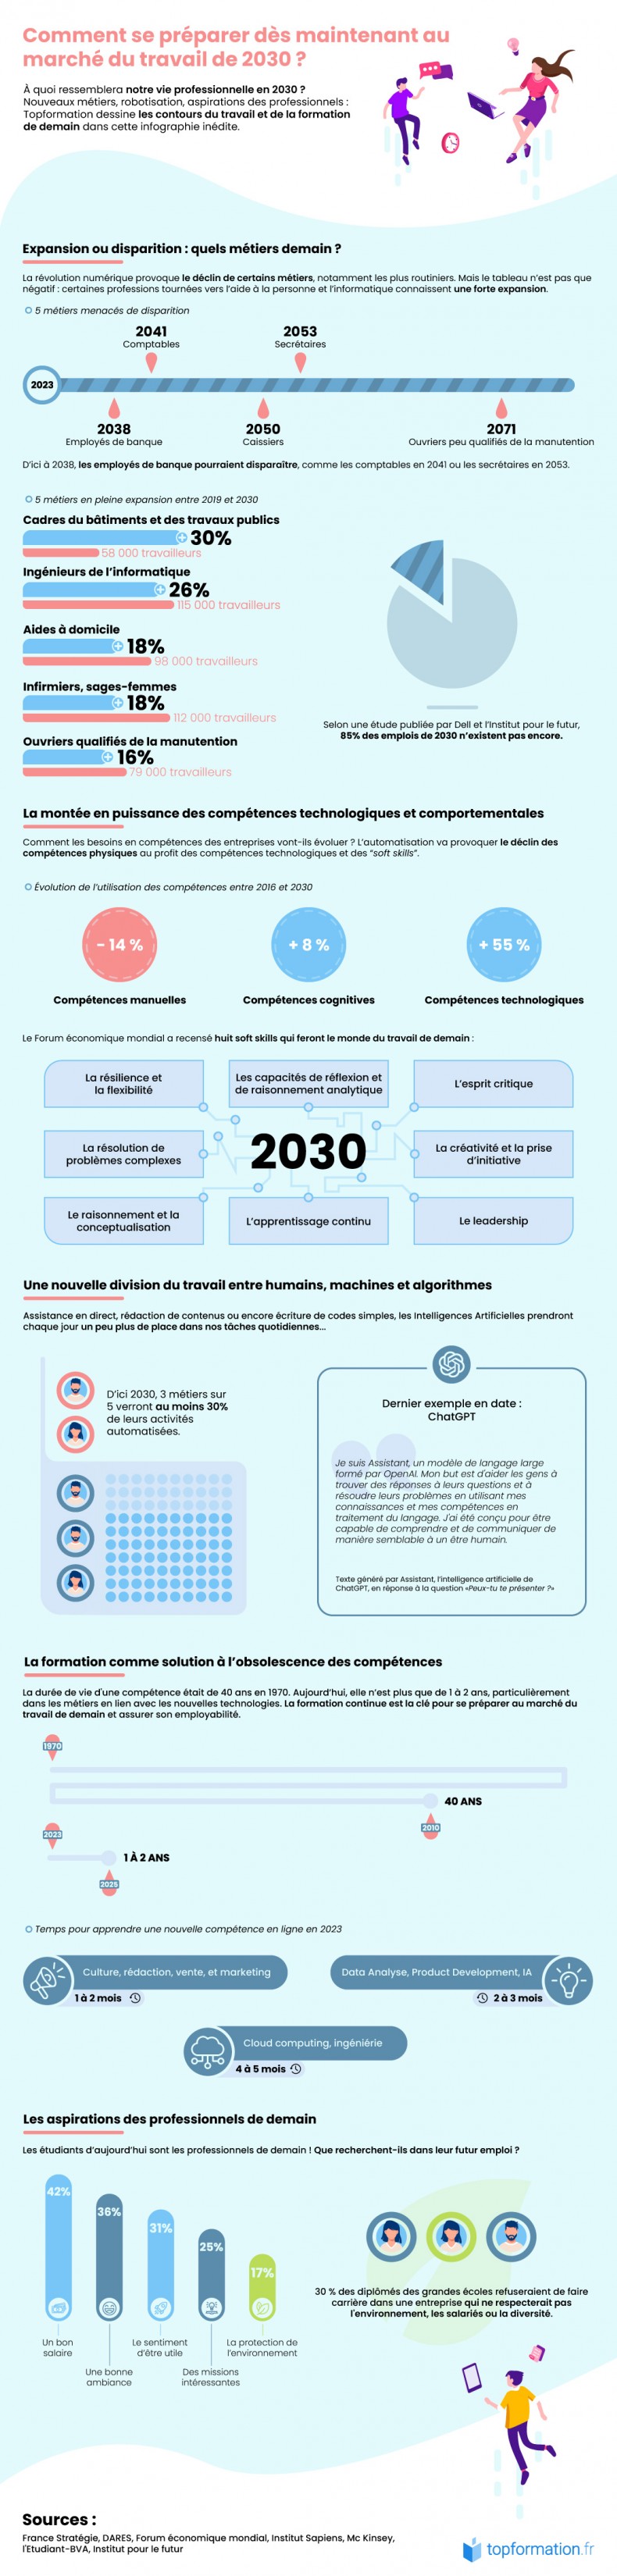 Infographie sur le marché du travail de 2030